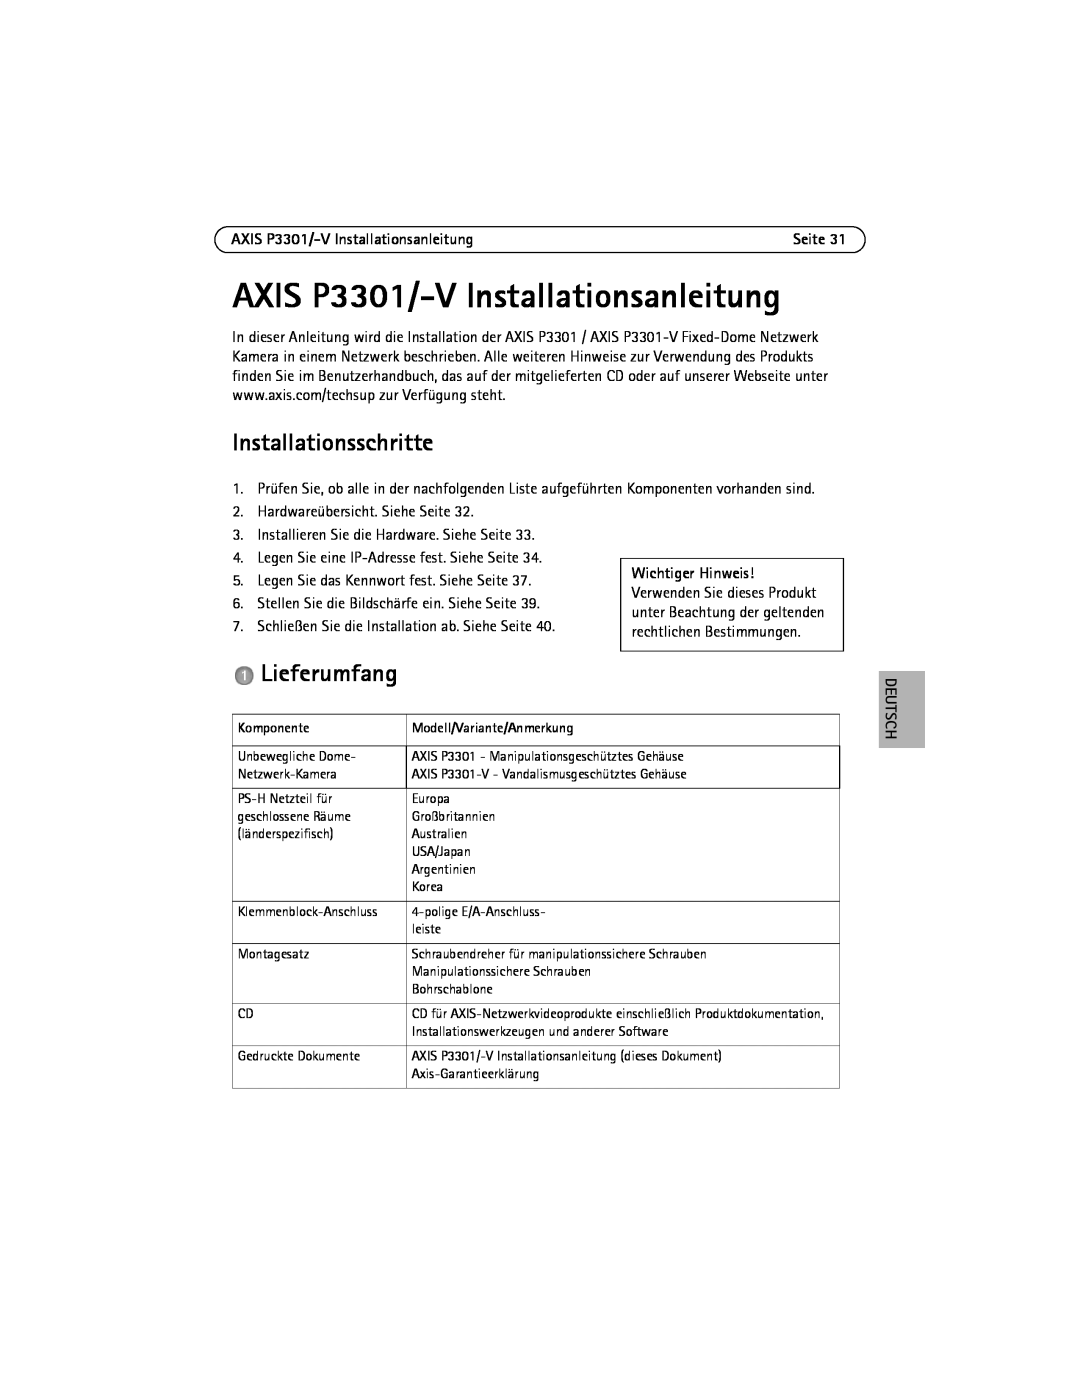 Axis Communications AXIS P3301/-V Installationsanleitung, Installationsschritte, Lieferumfang, Deutsch, Komponente 